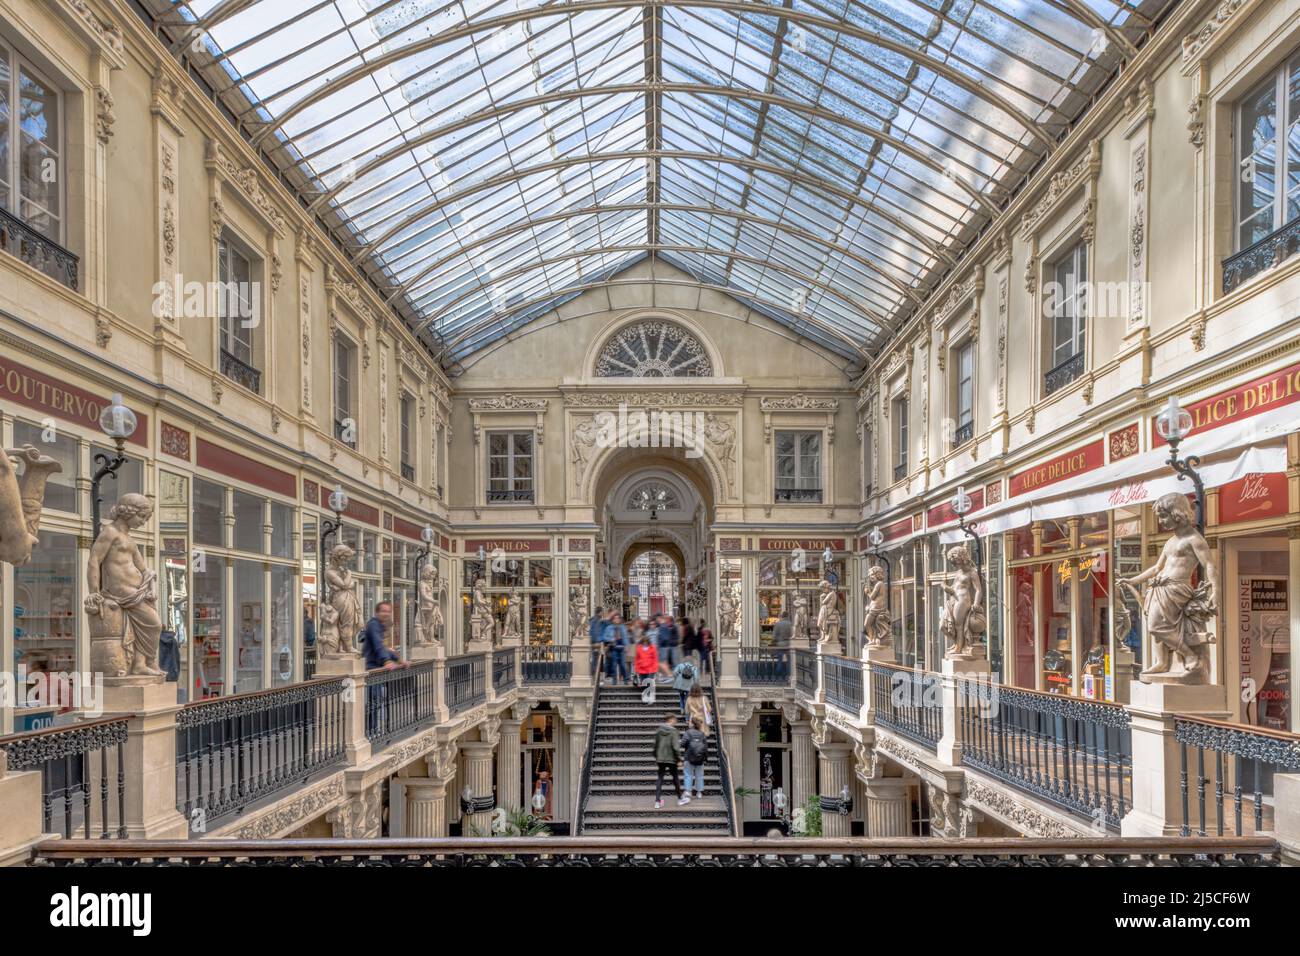 Le passage de la Pommeraye est un lieu célèbre de Nantes. C'est une arcade commerciale construite au 19th siècle Banque D'Images